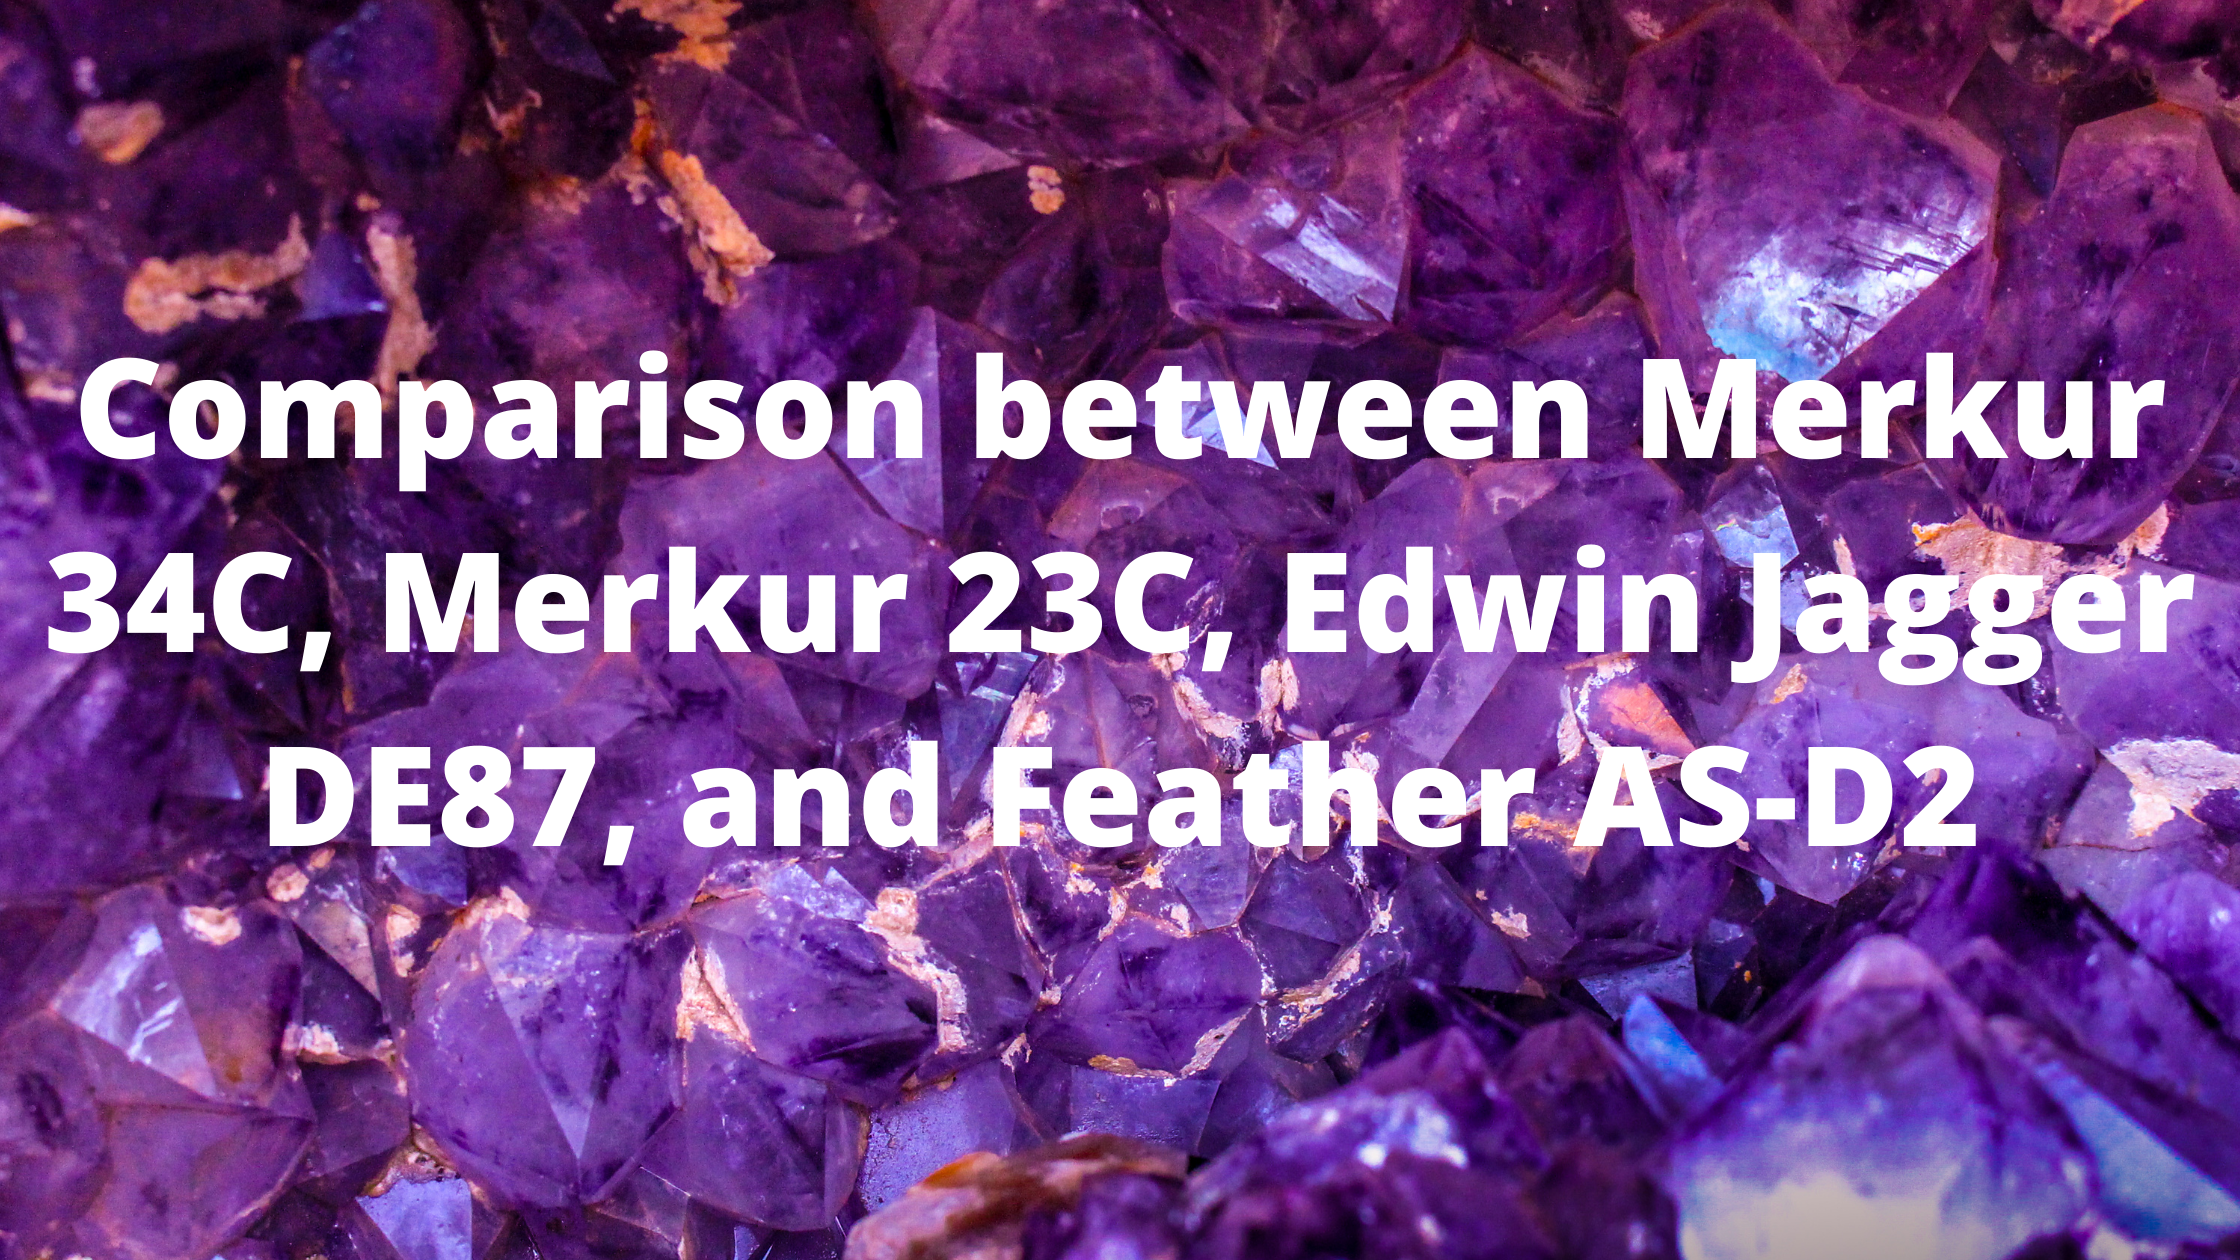 Comparison between Merkur 34C, Merkur 23C, Edwin Jagger DE87, and Feather AS-D2